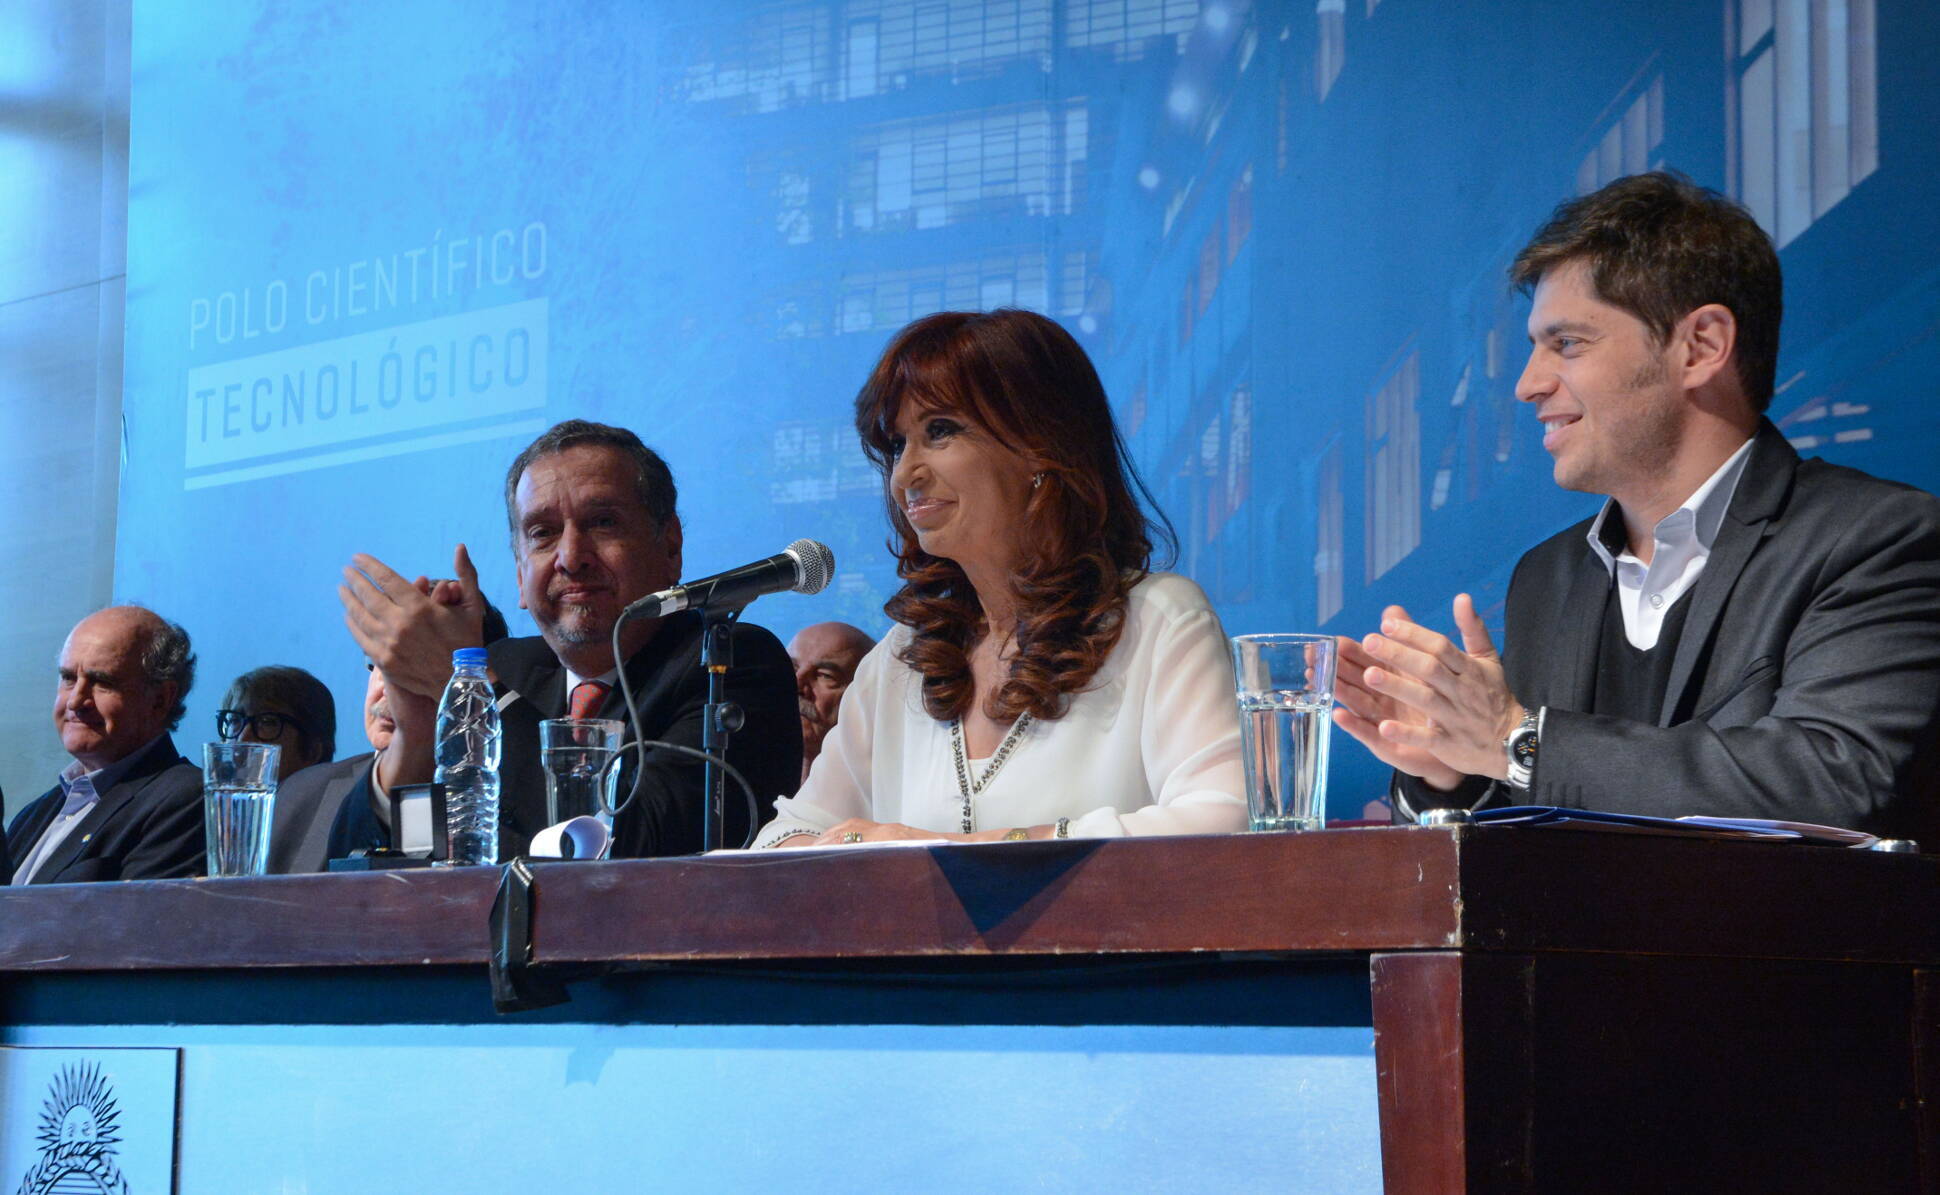 Cristina Fernández, Lino Barañao y Axel Kicillof en el Polo Científico Tecnológico